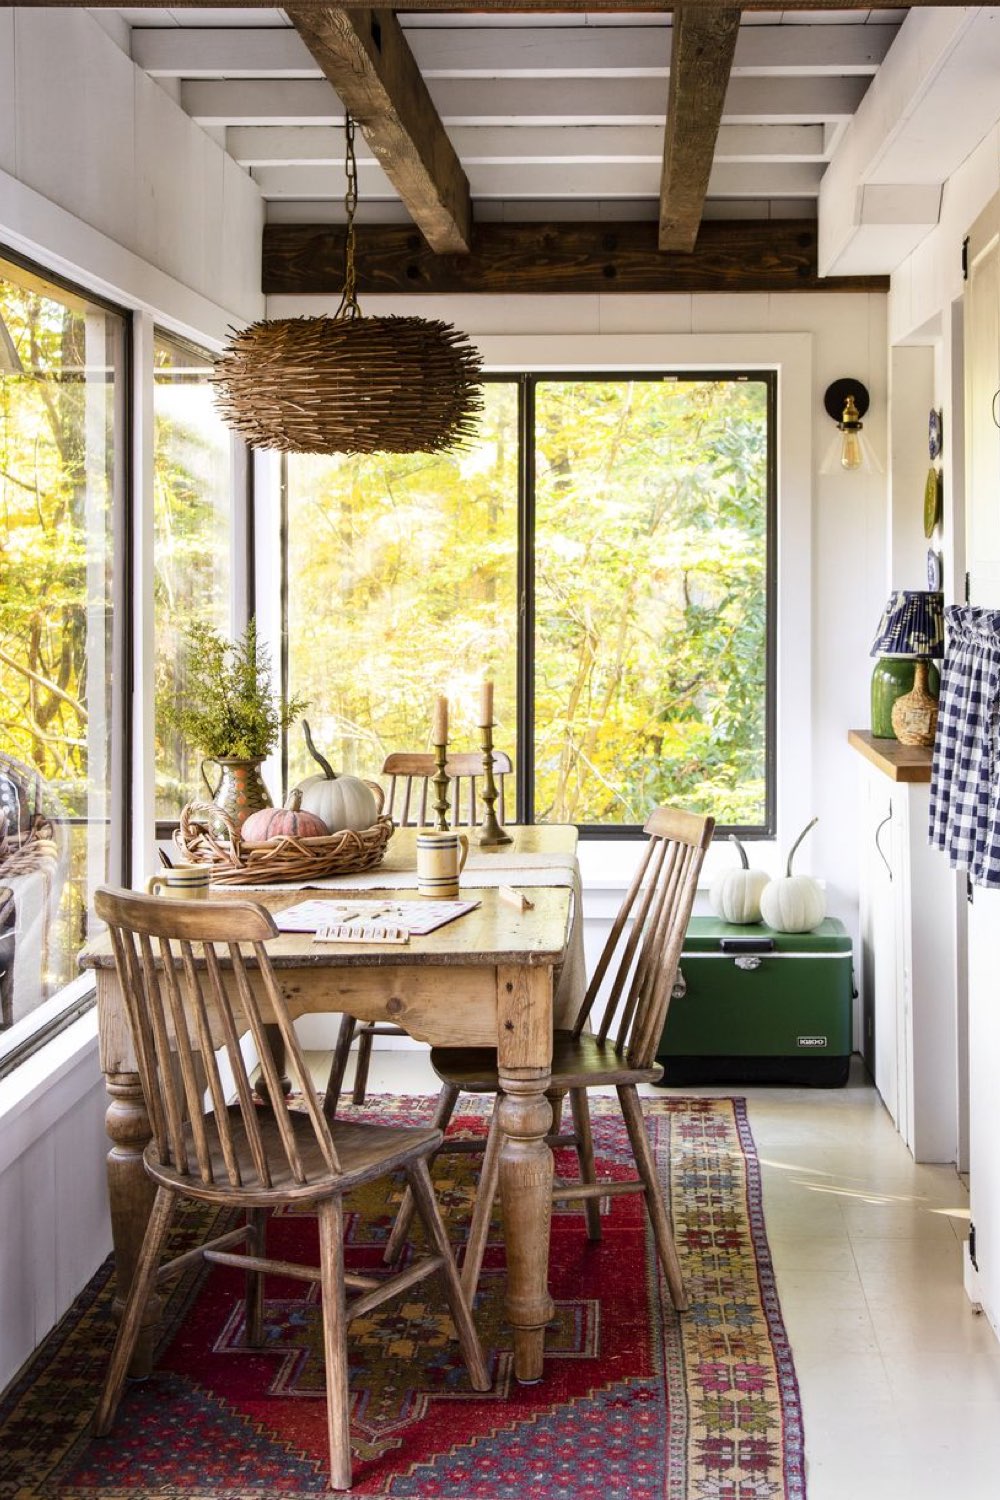 visite deco cottage charmant montagne loggia vitrée espace salle à manger coin petite table tapis coloré meuble en bois